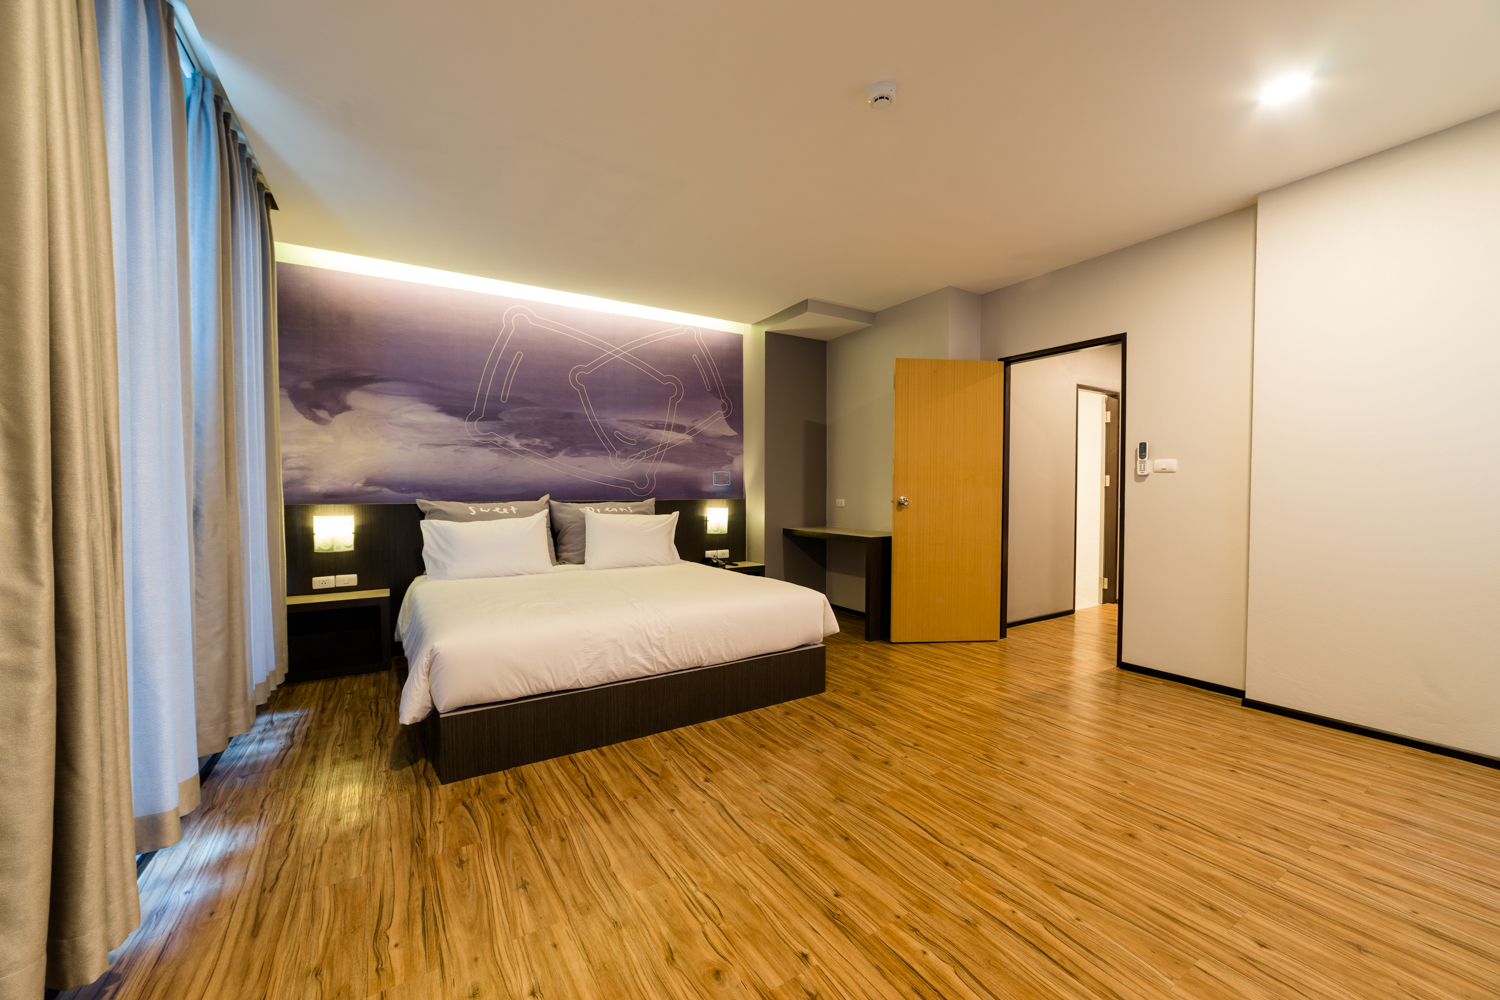 รีวิวโรงแรมซี สลีป - โปรโมชั่นโรงแรม 3 ดาวในหาดใหญ่ | Trip.com